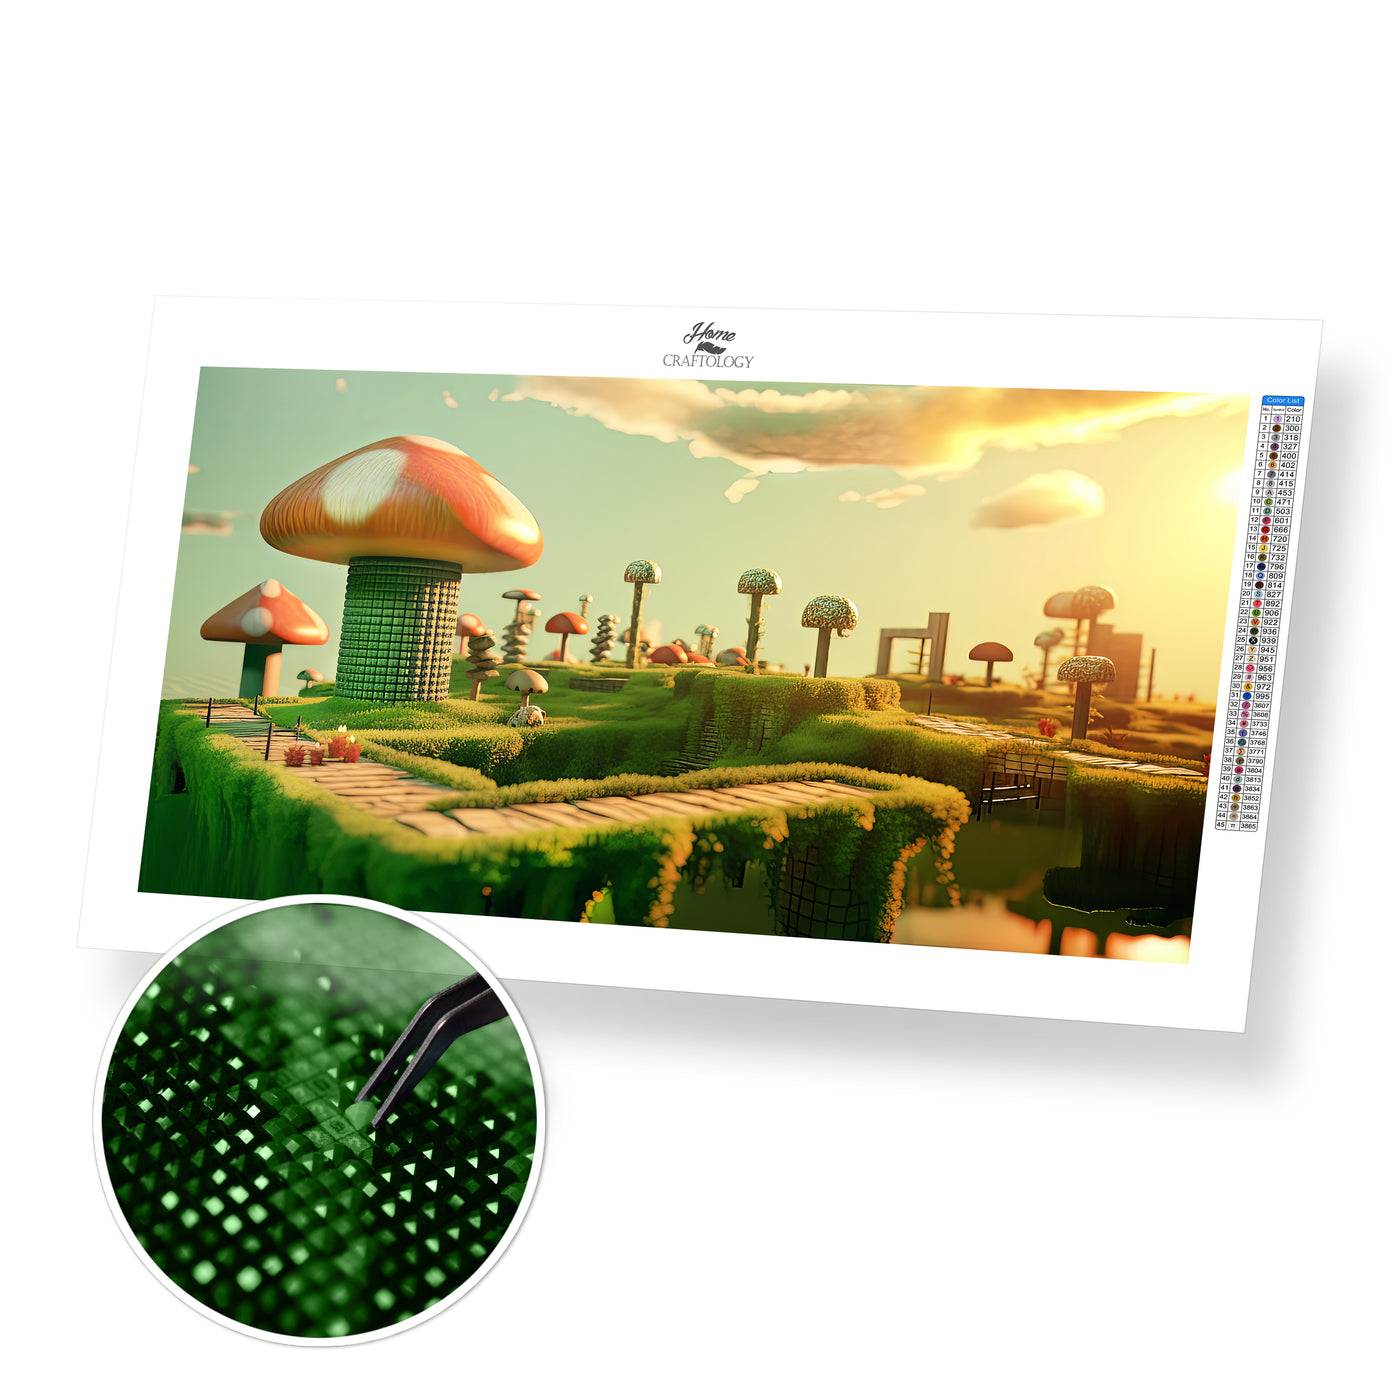 Huge Mushrooms - Premium Diamond Painting Kit